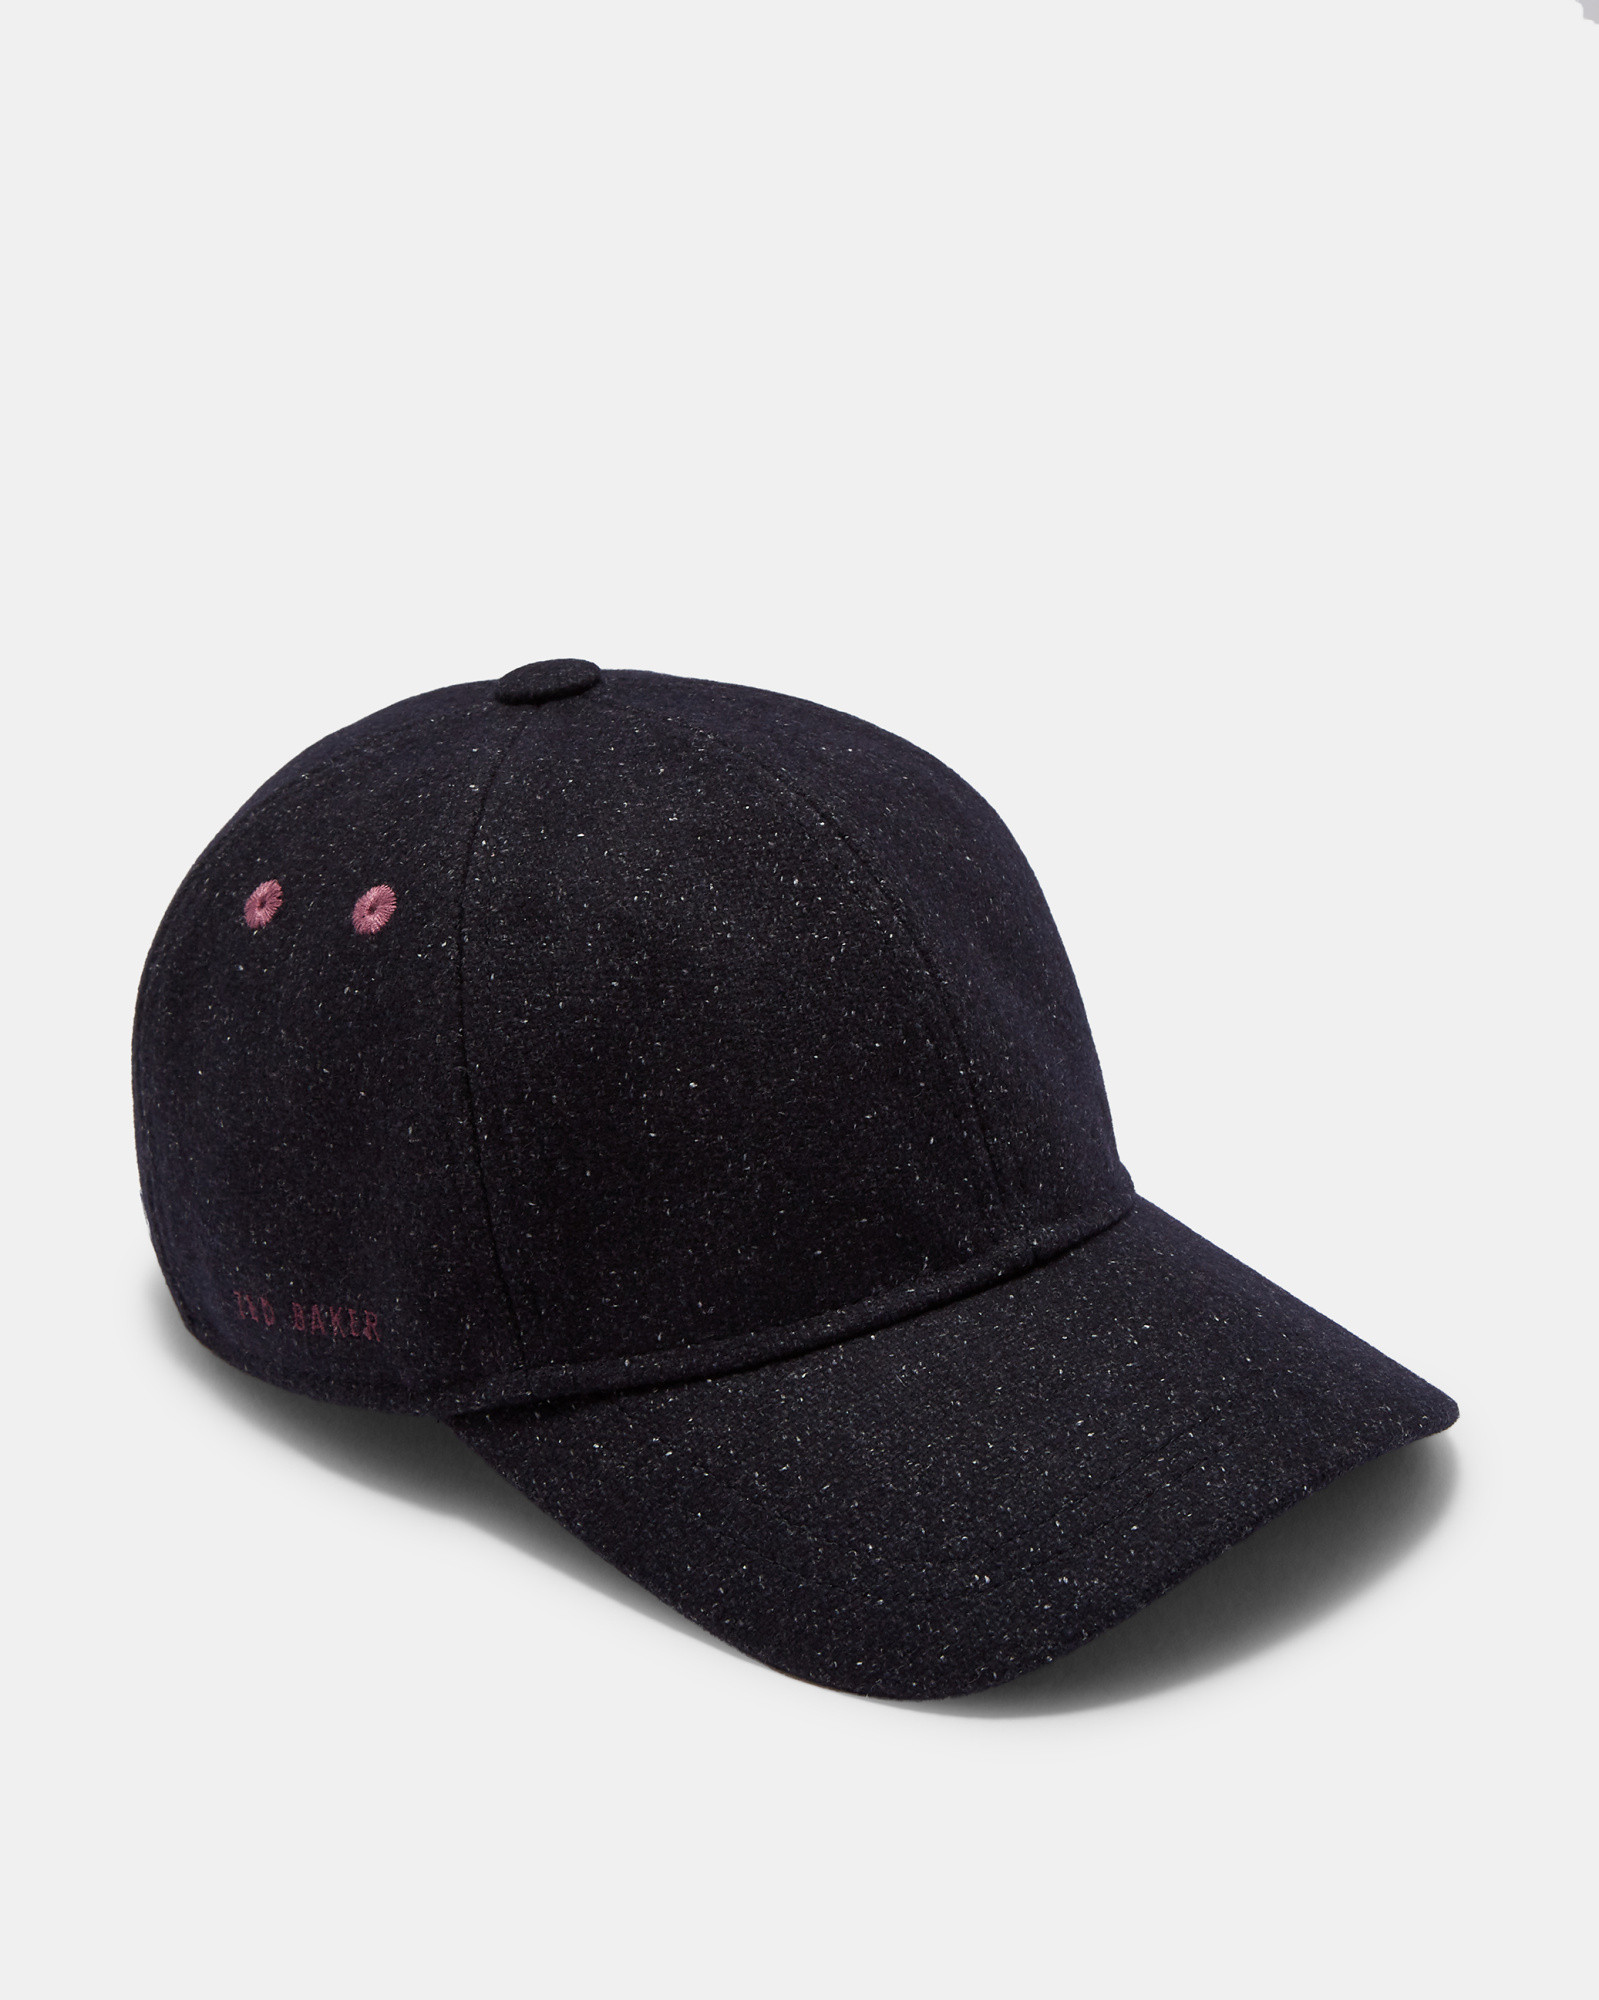 BERRYZ Semi plain wool baseball cap